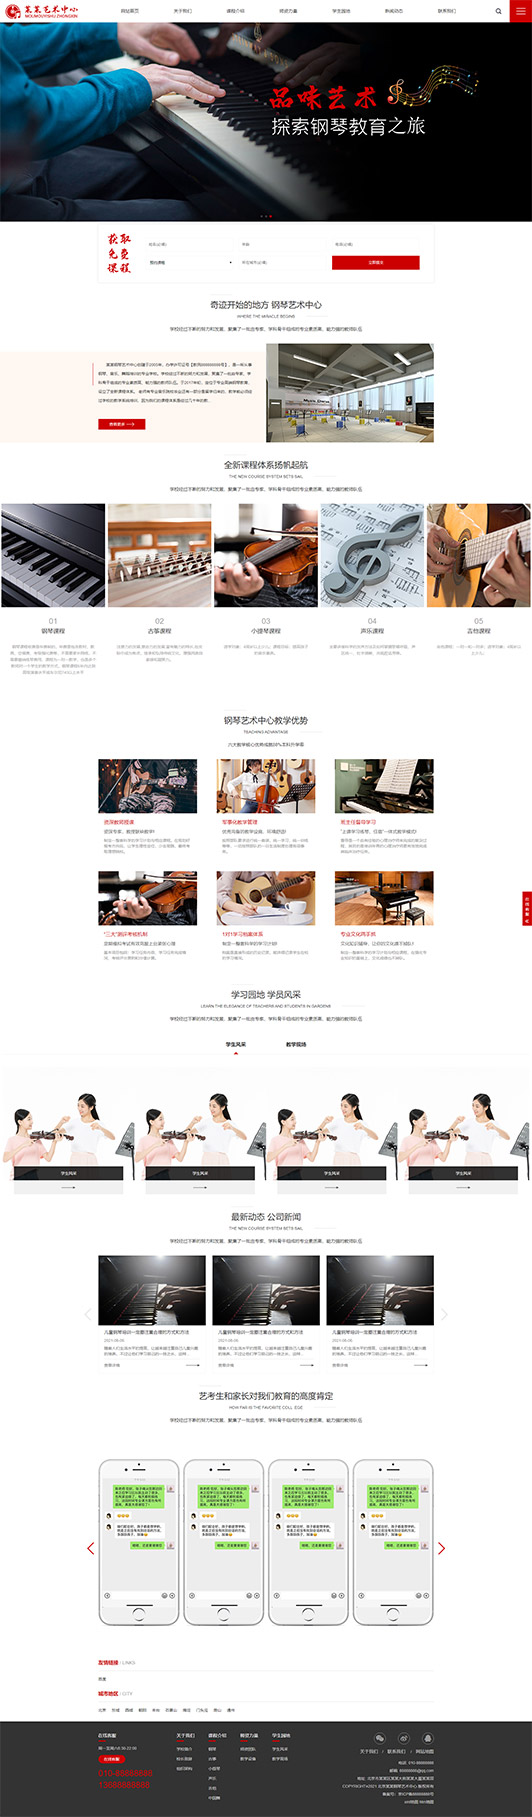 南京钢琴艺术培训公司响应式企业网站